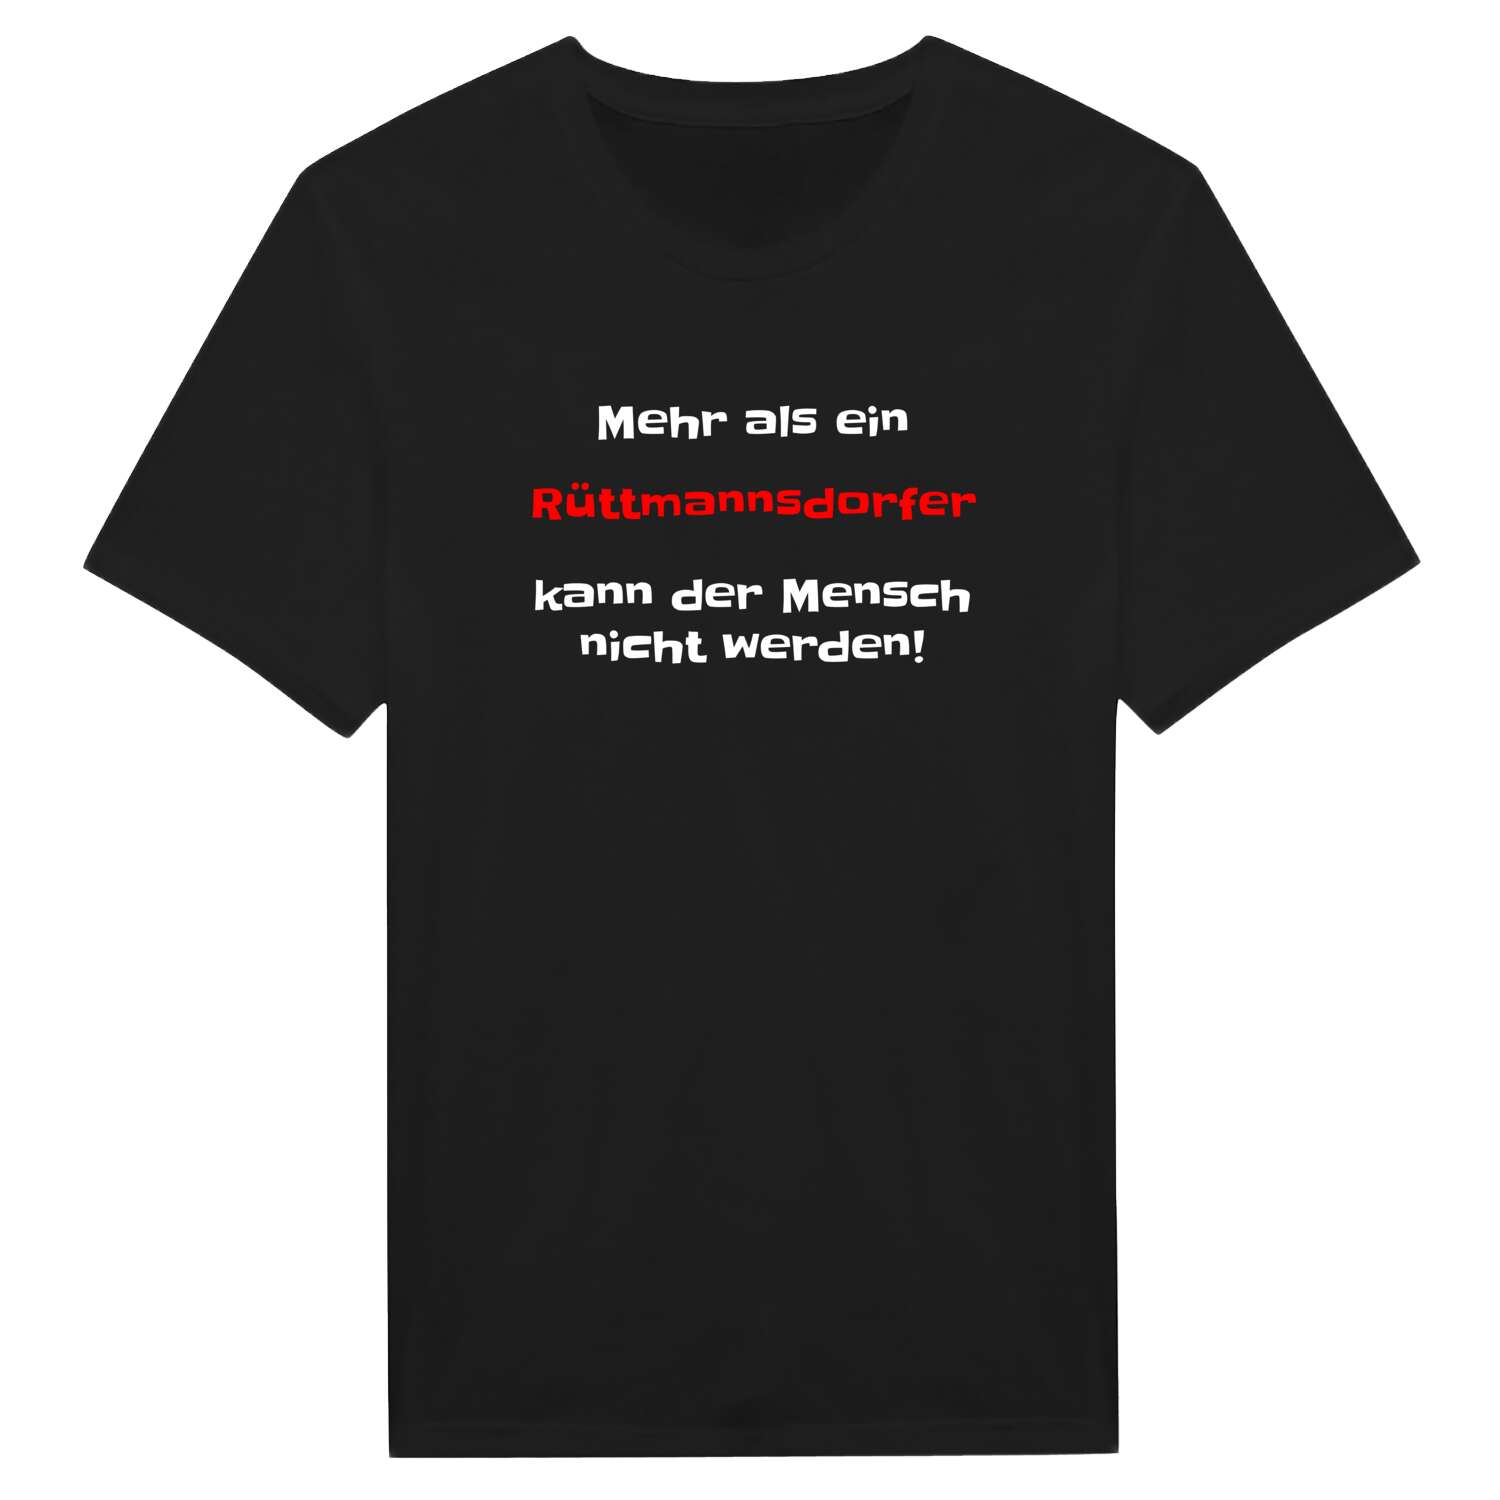 Rüttmannsdorf T-Shirt »Mehr als ein«